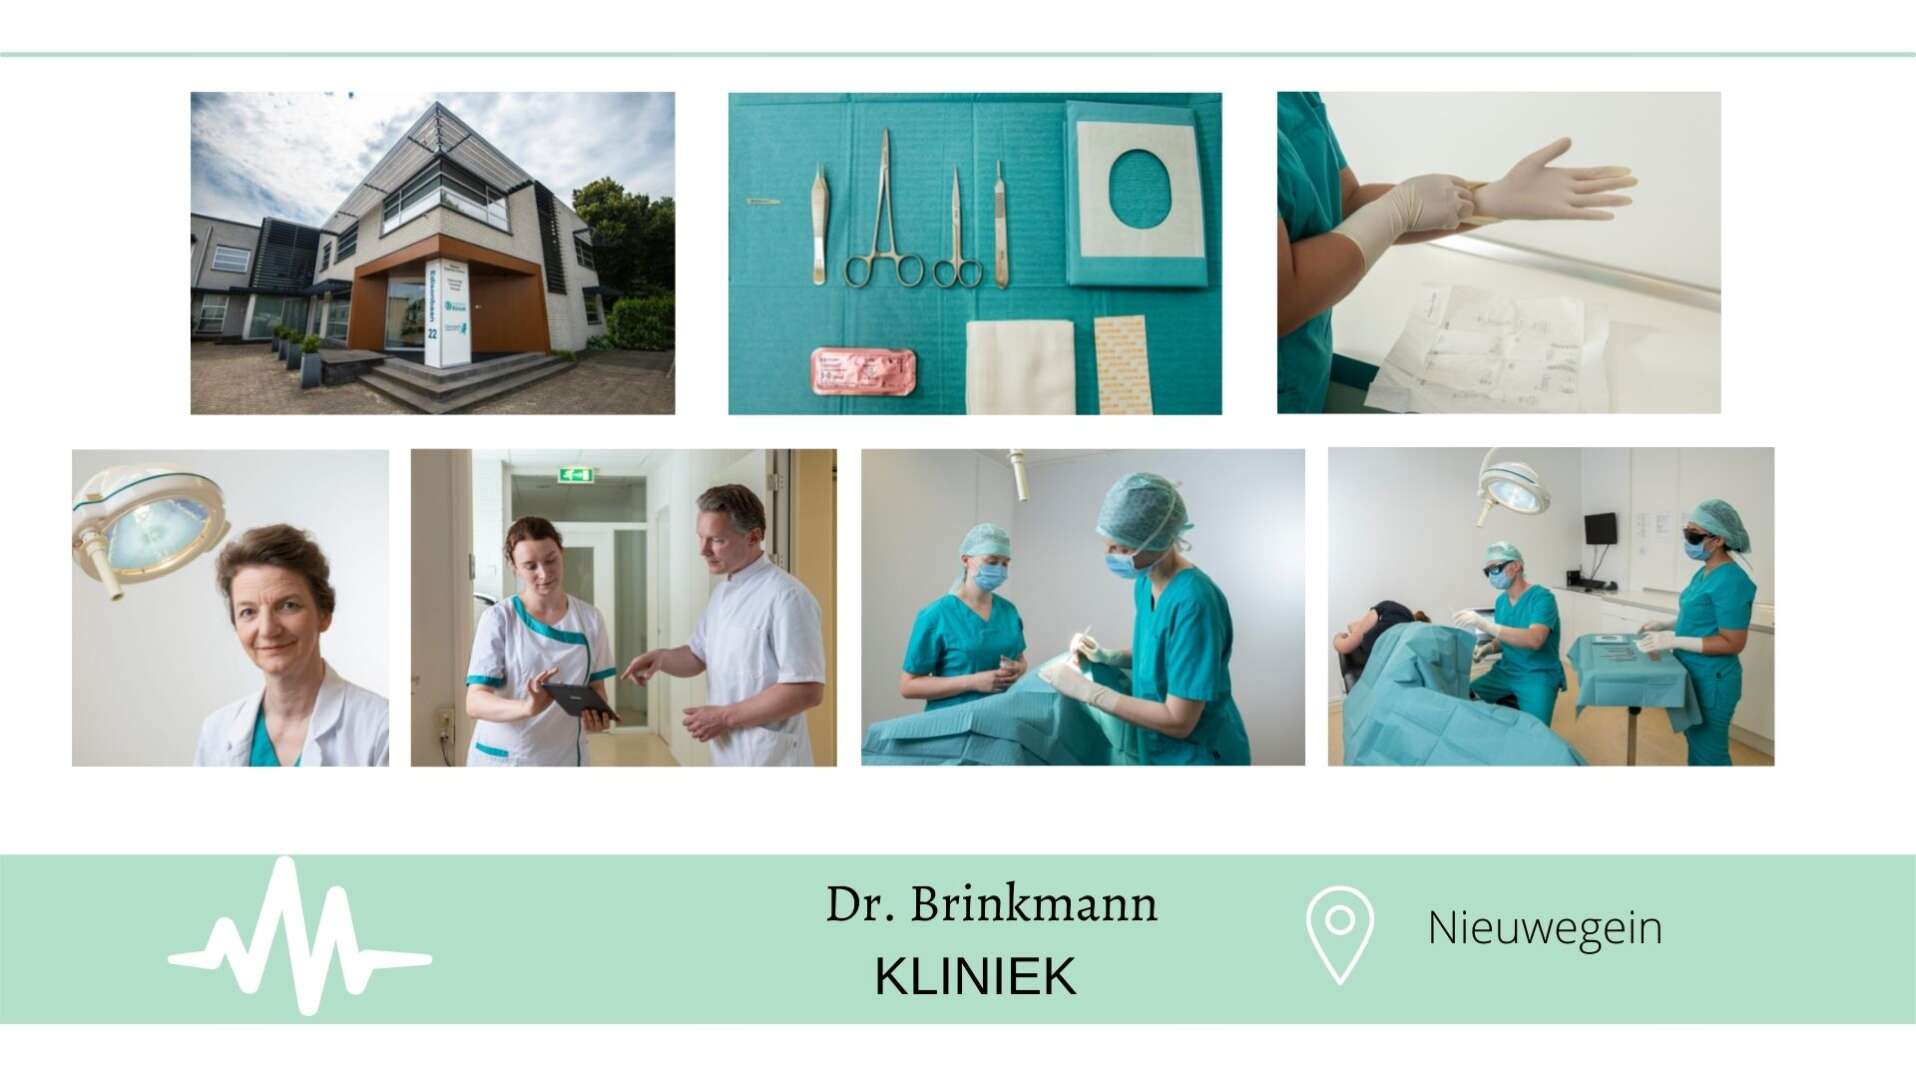 Dr. Brinkmann KLINIEK